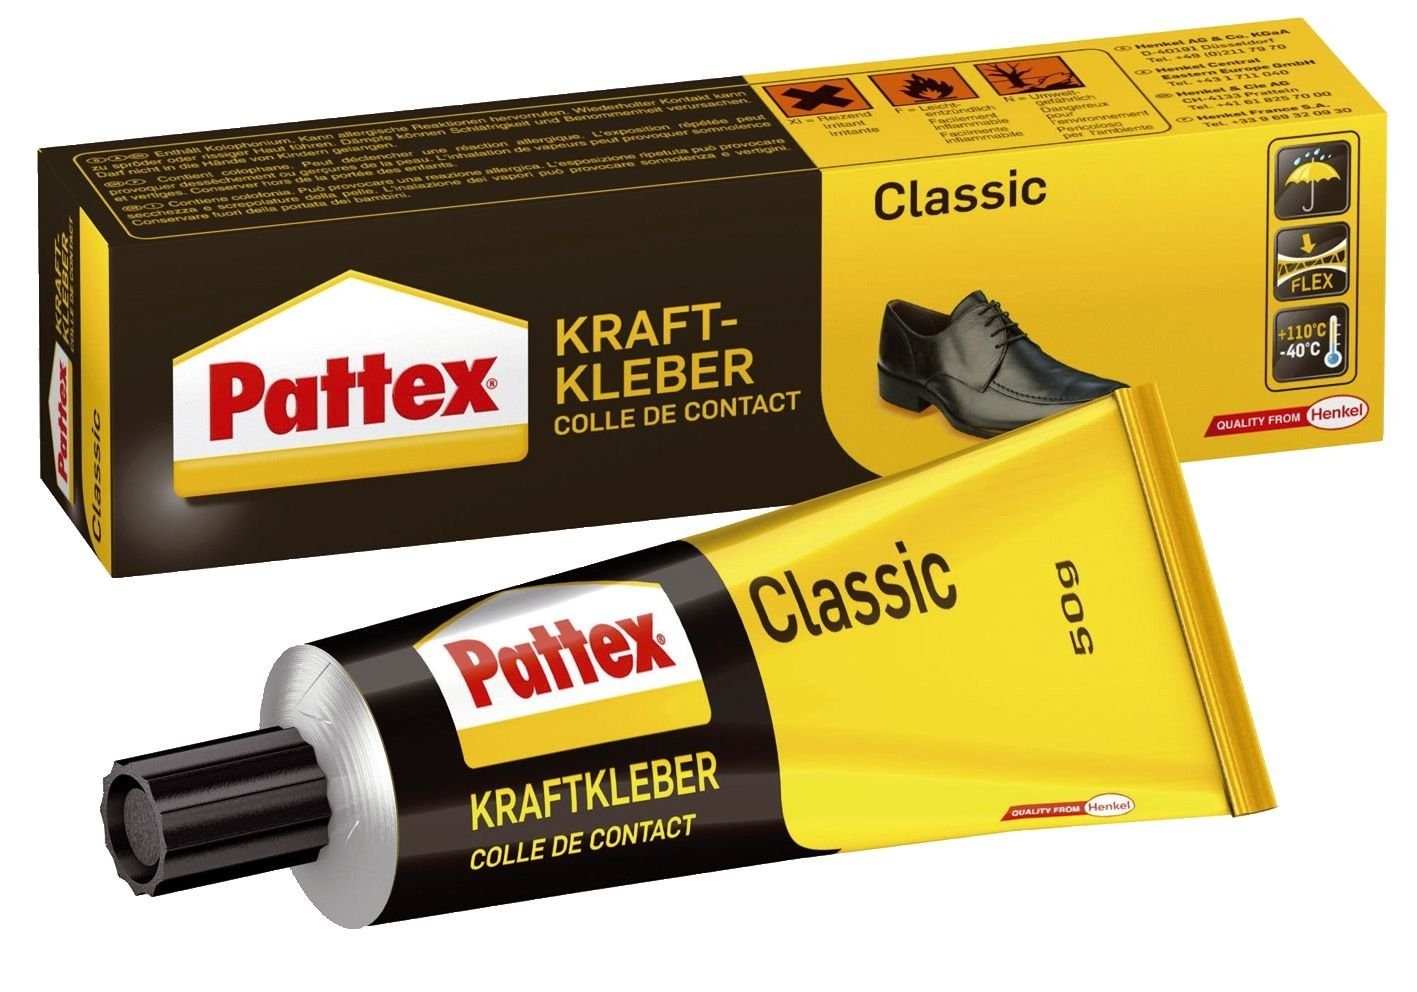 Pattex Handgelenkstütze Pattex Kraftkleber Classic, hochwärmefest, Tube mit 50g